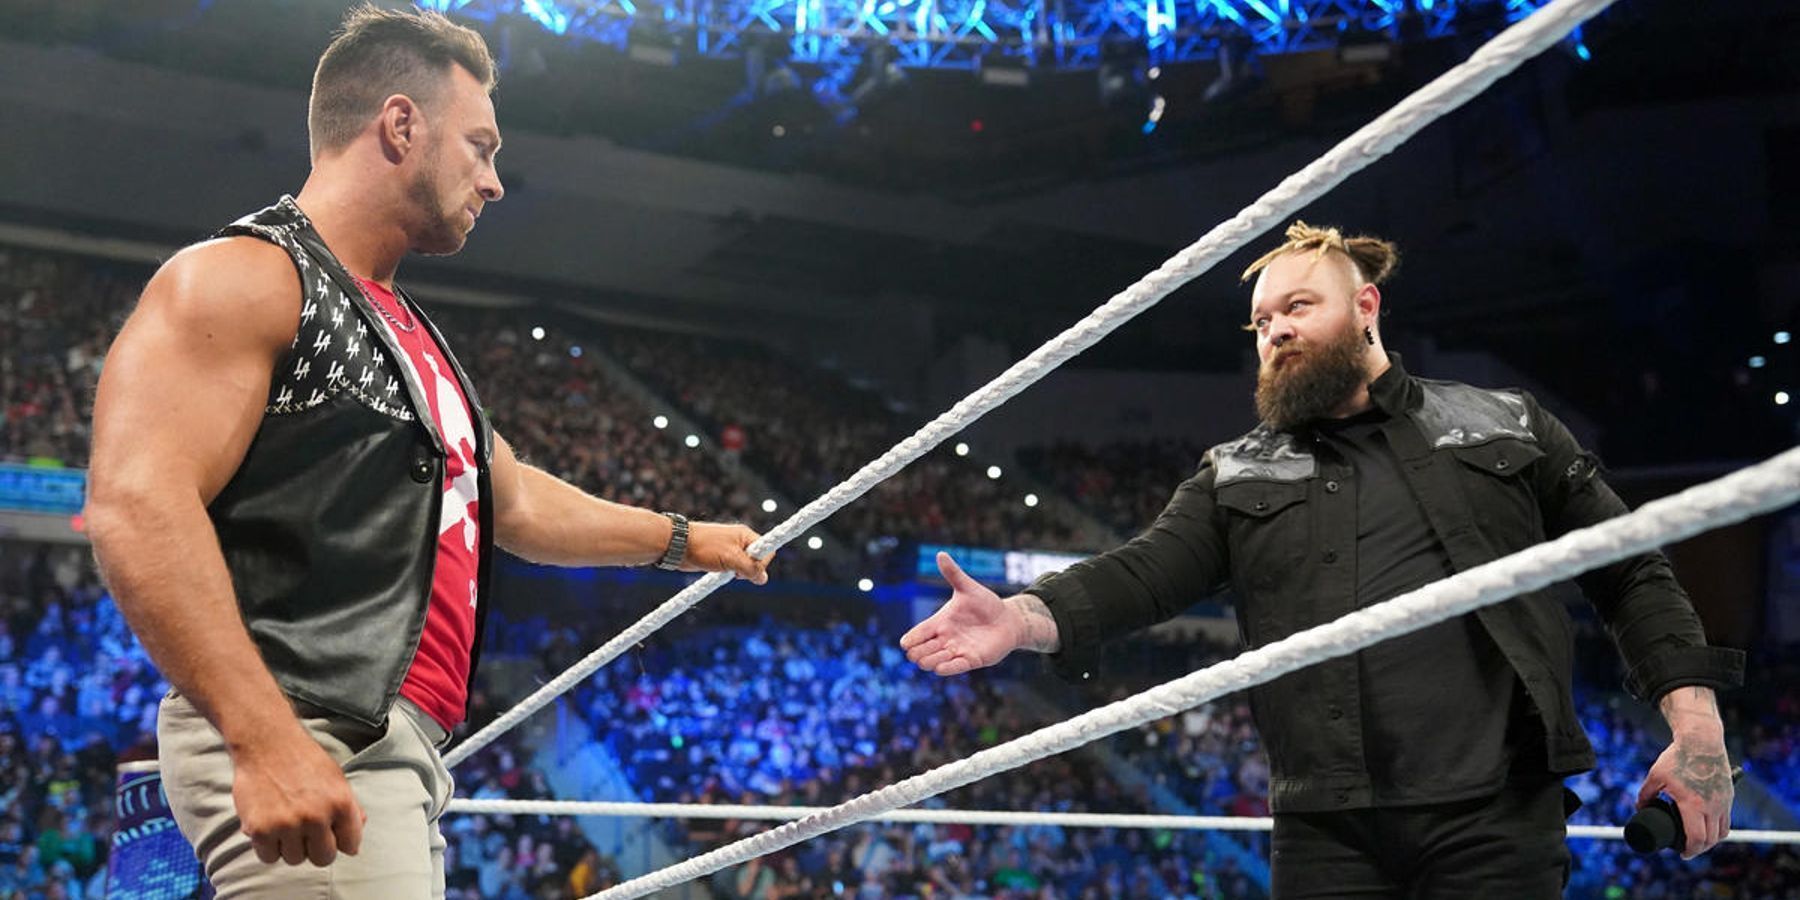 Bray Wyatt will face LA Knight in his return match